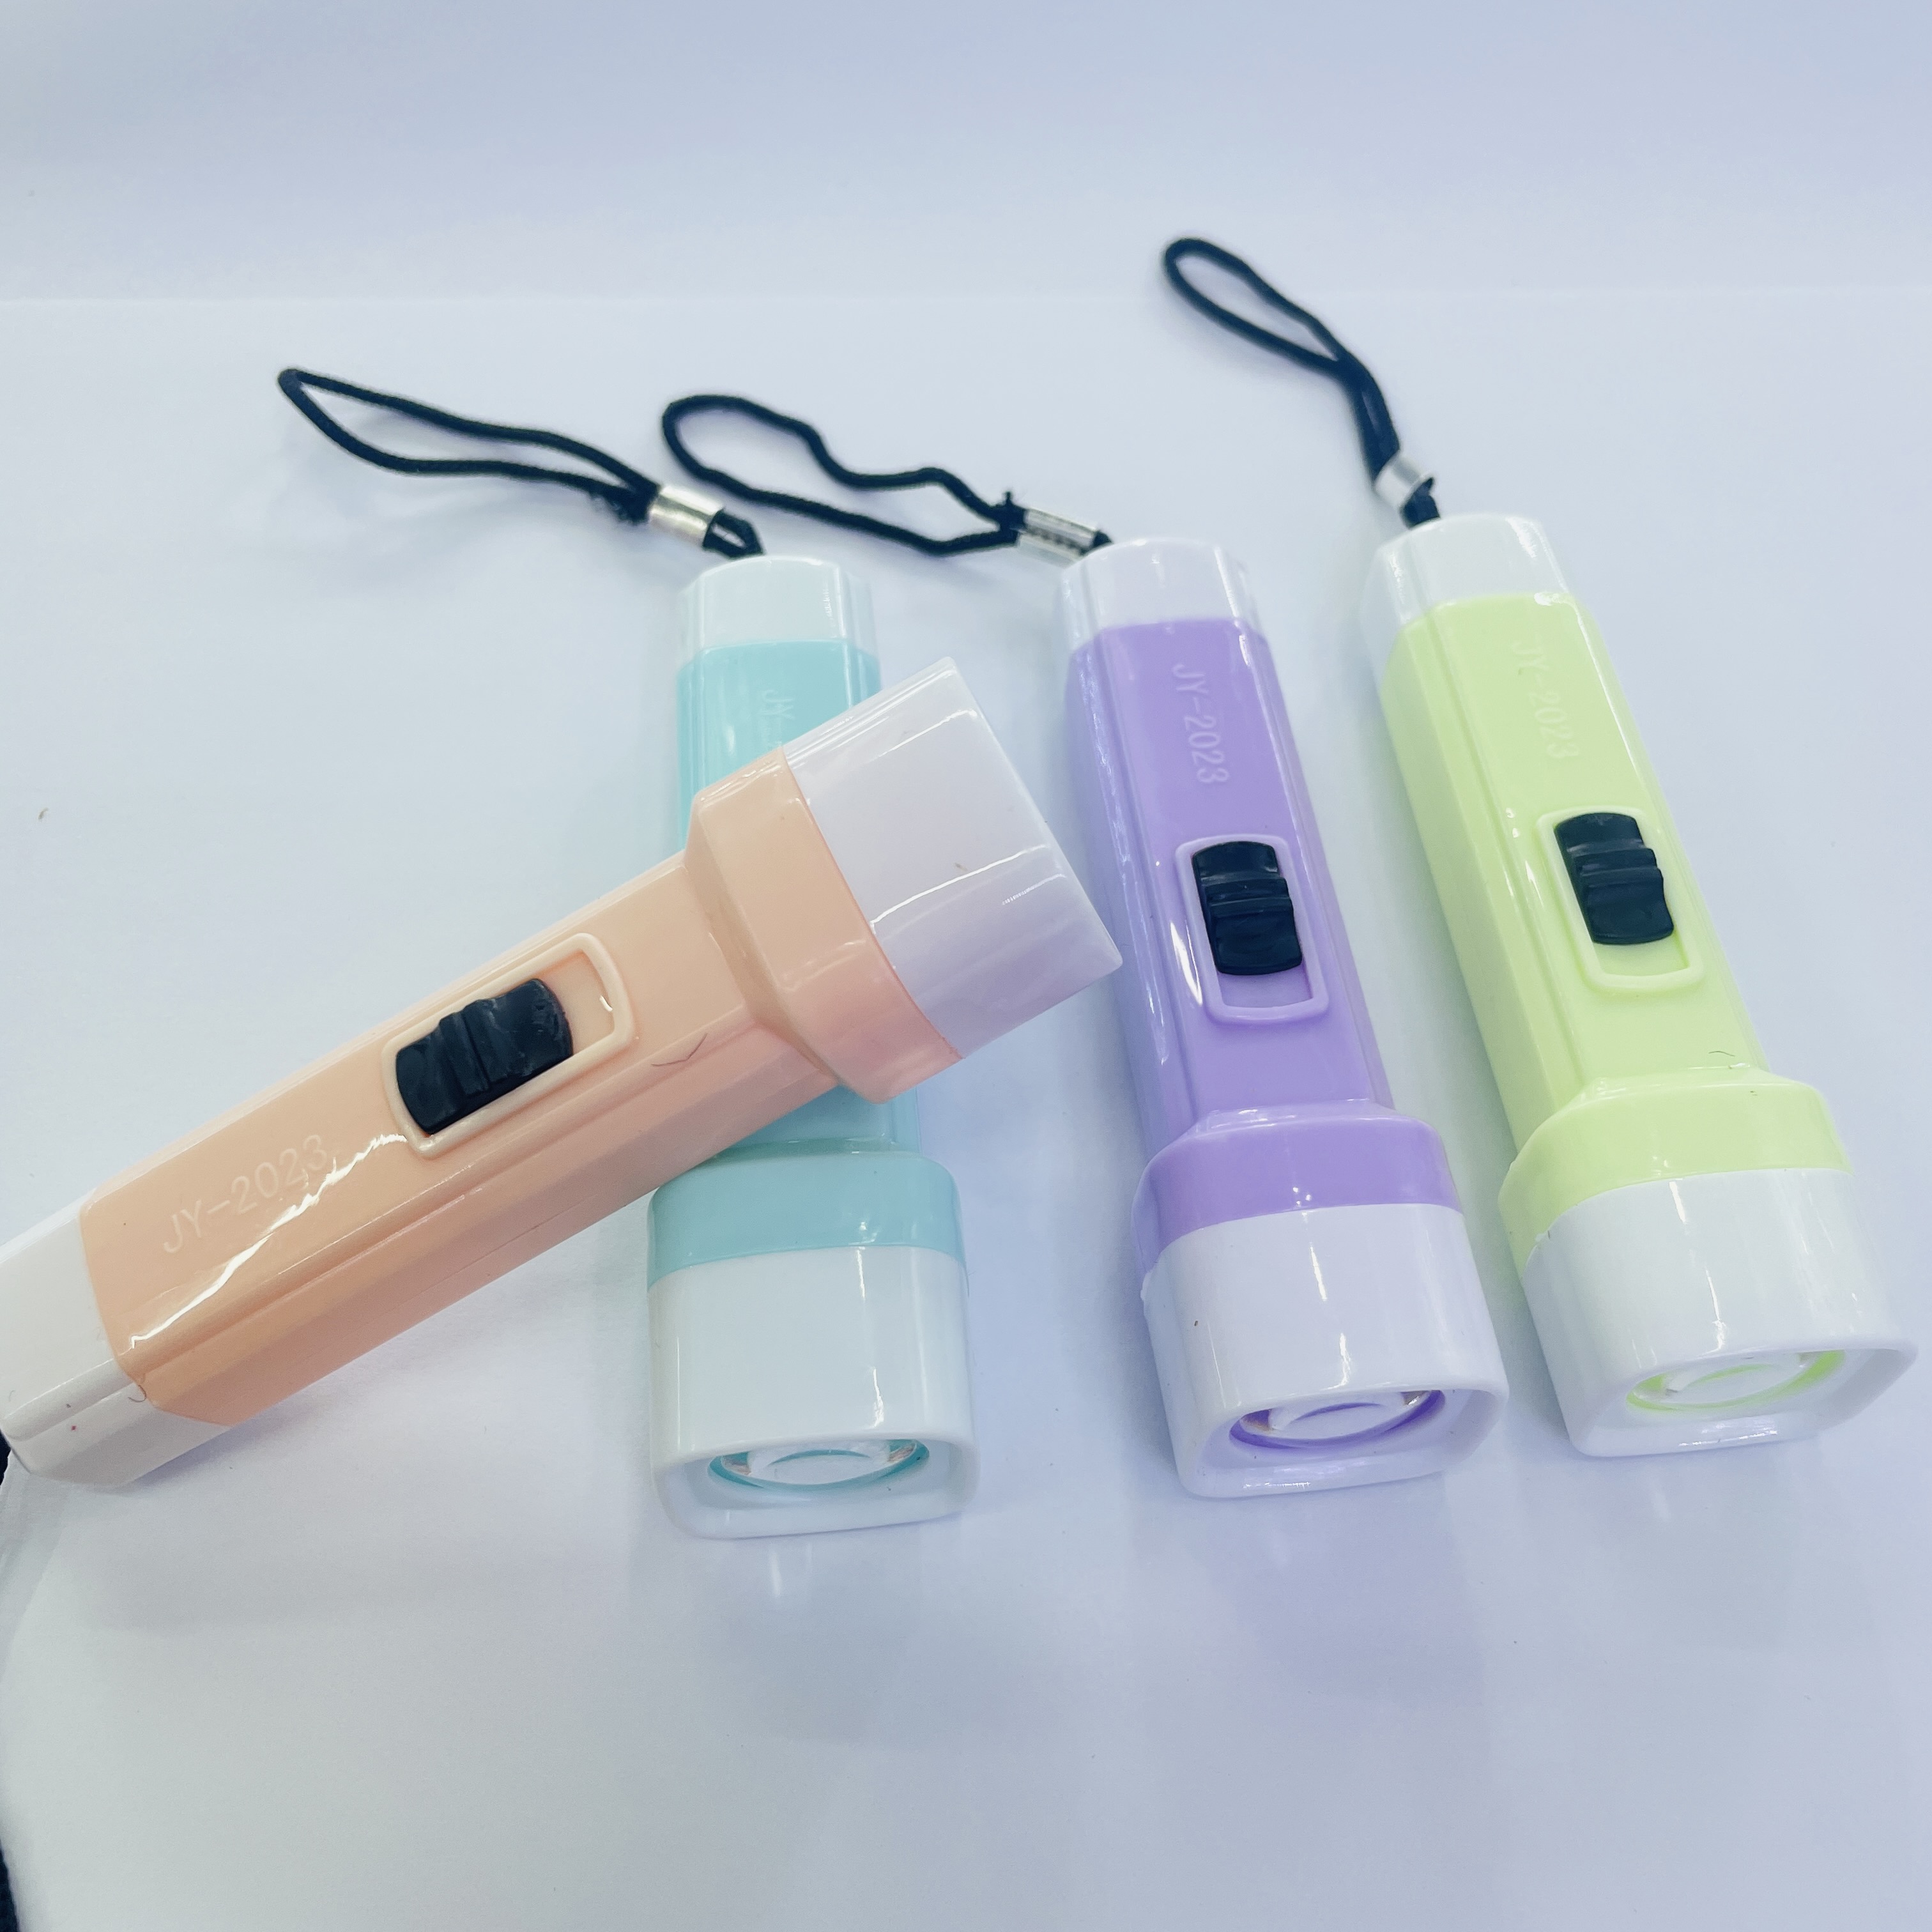 塑料玩具小手电筒强光电筒照明灯LED批发实用小家电小礼品详情图2